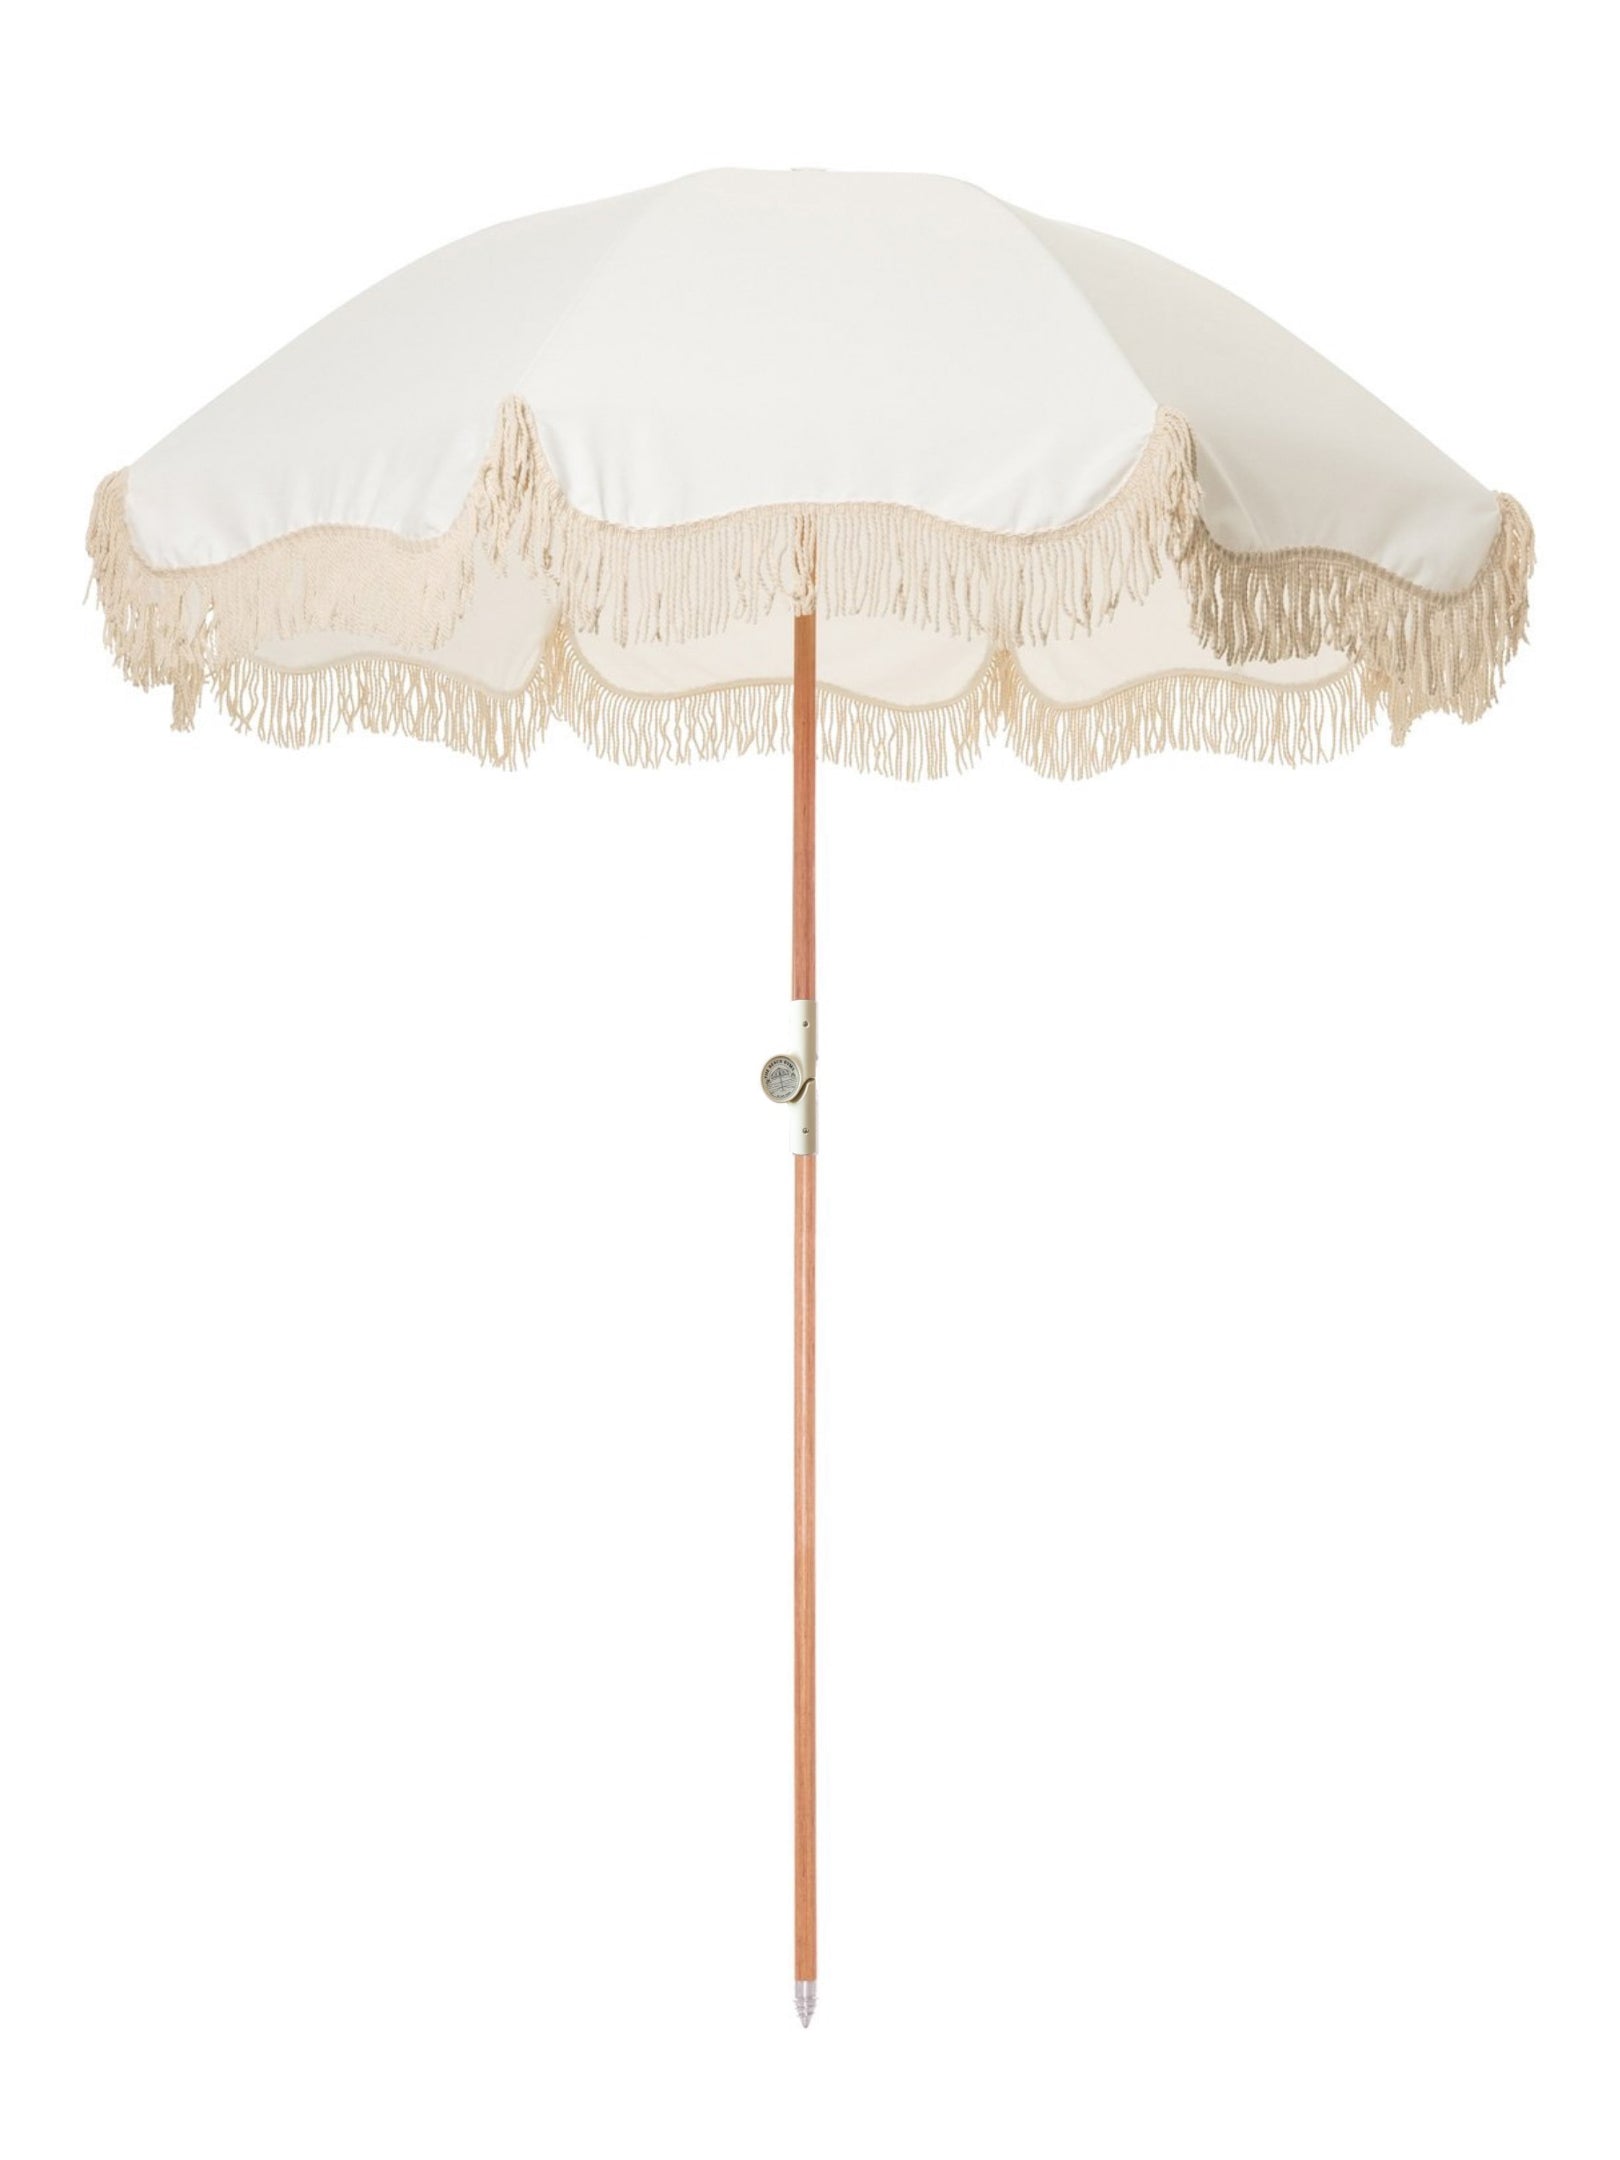 The Clifton Beach Premium Umbrella